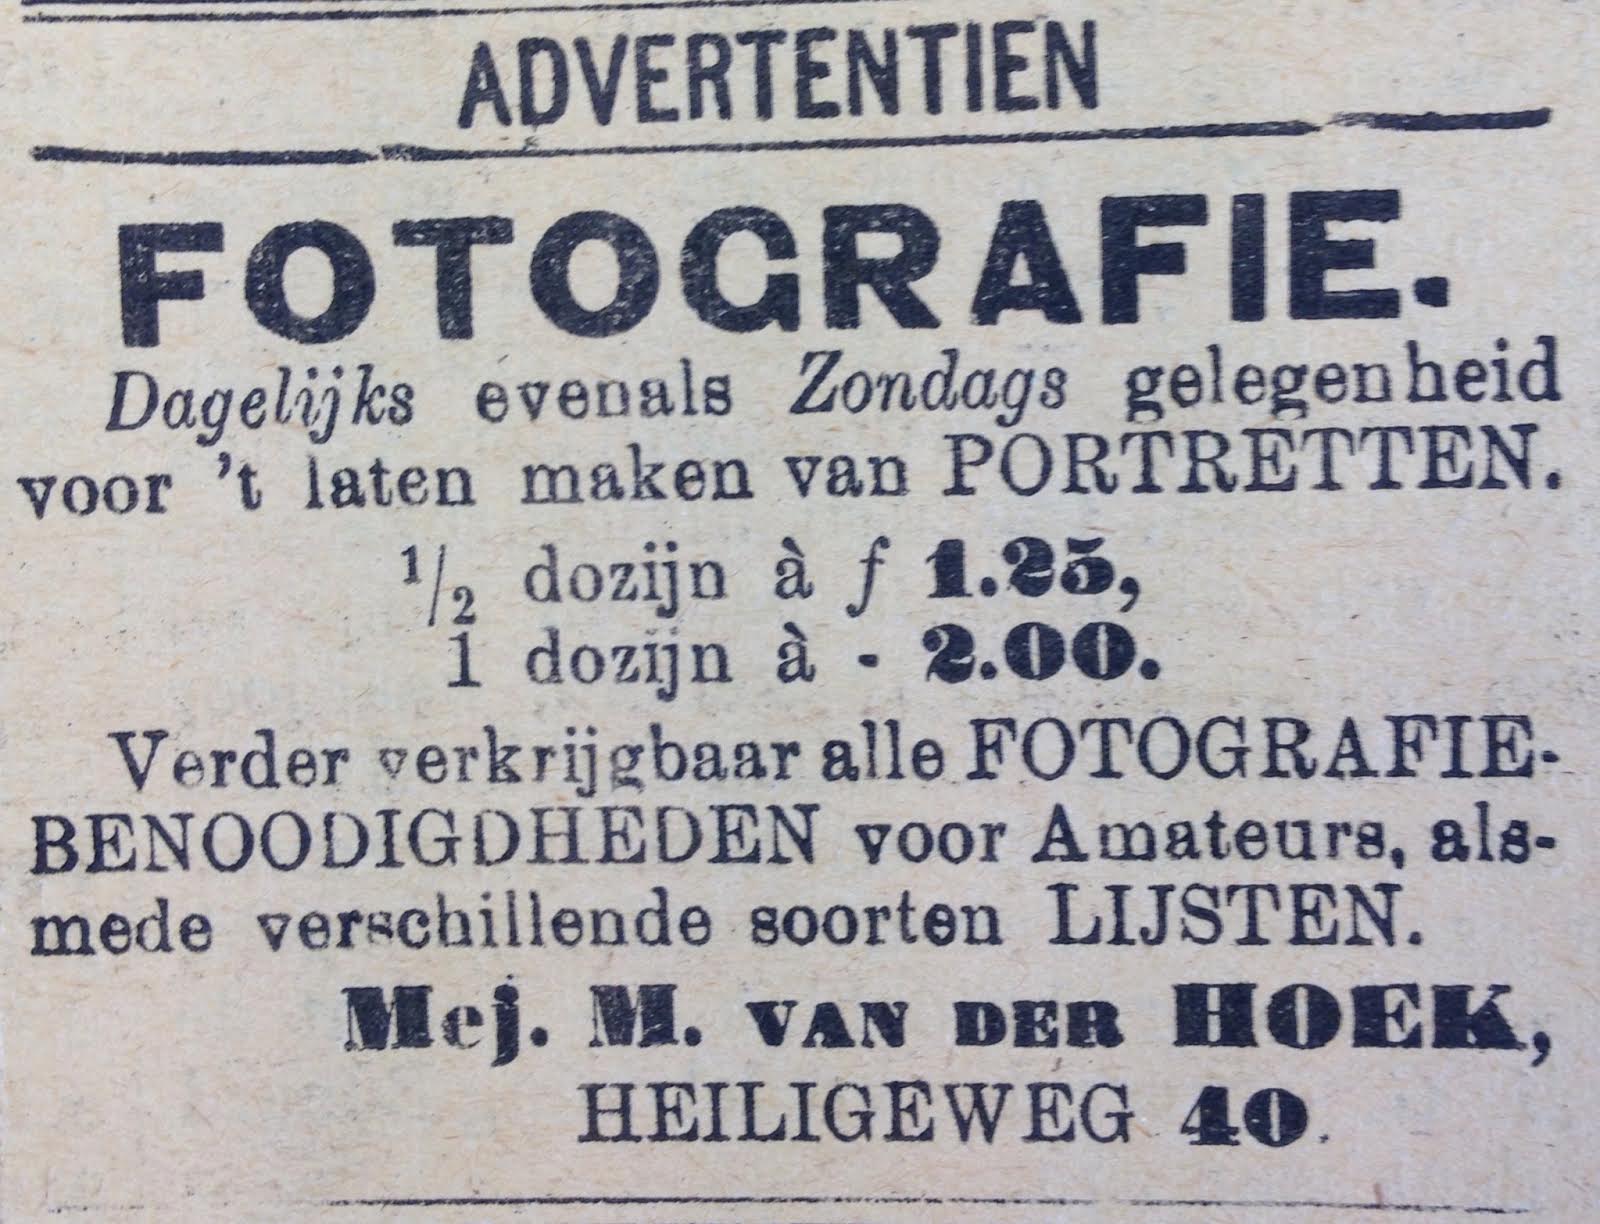 Advertentie 15-5-1910 in Harl Crt van mejuffr Van der Hoek